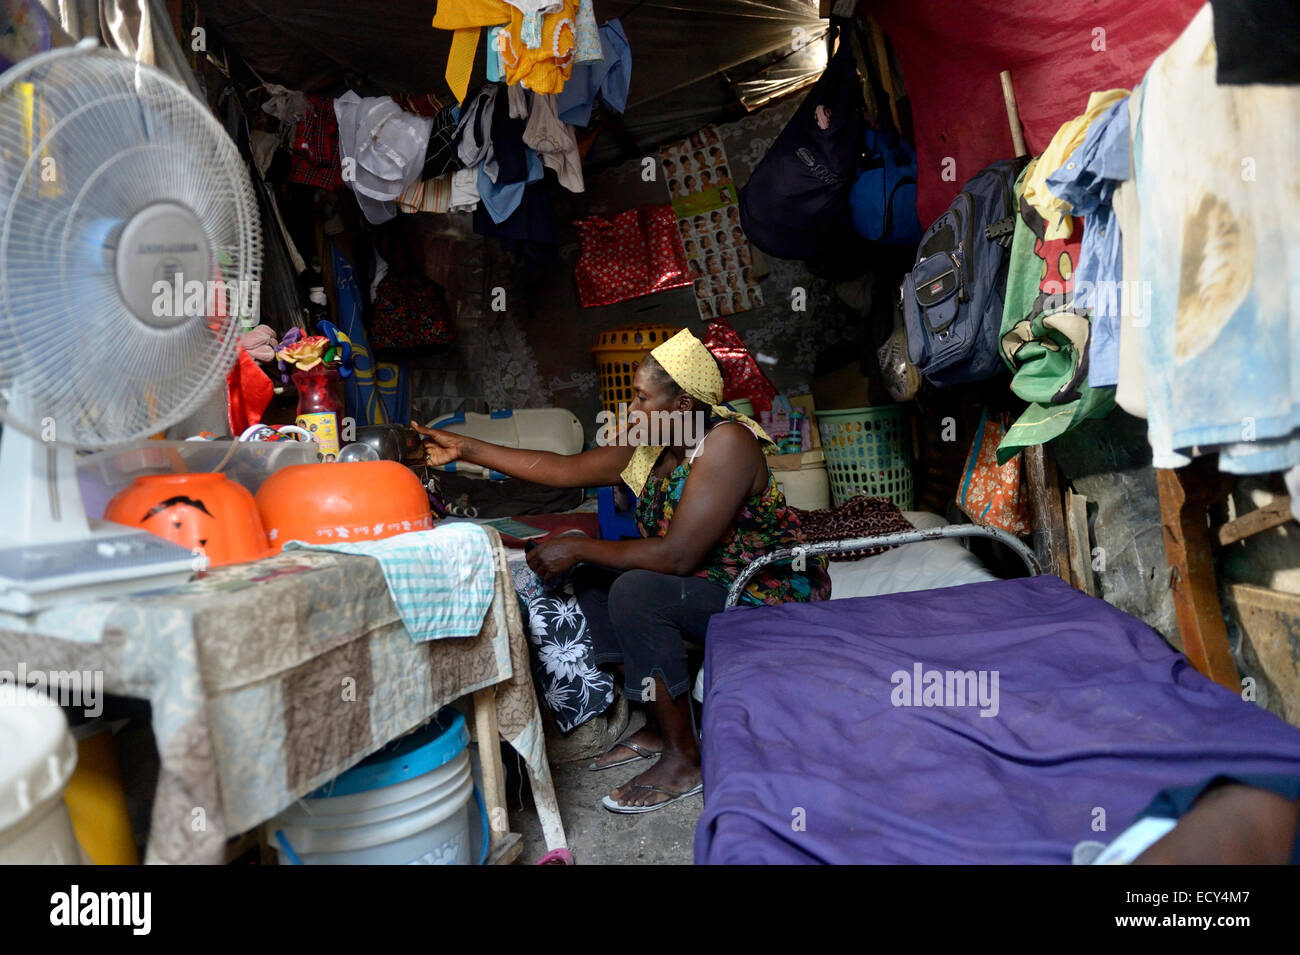 La mujer, de 40 años, en los cuarteles, campamentos de refugiados por el terremoto Camp Icare, 5 años después del terremoto de 2010, Fort National Foto de stock